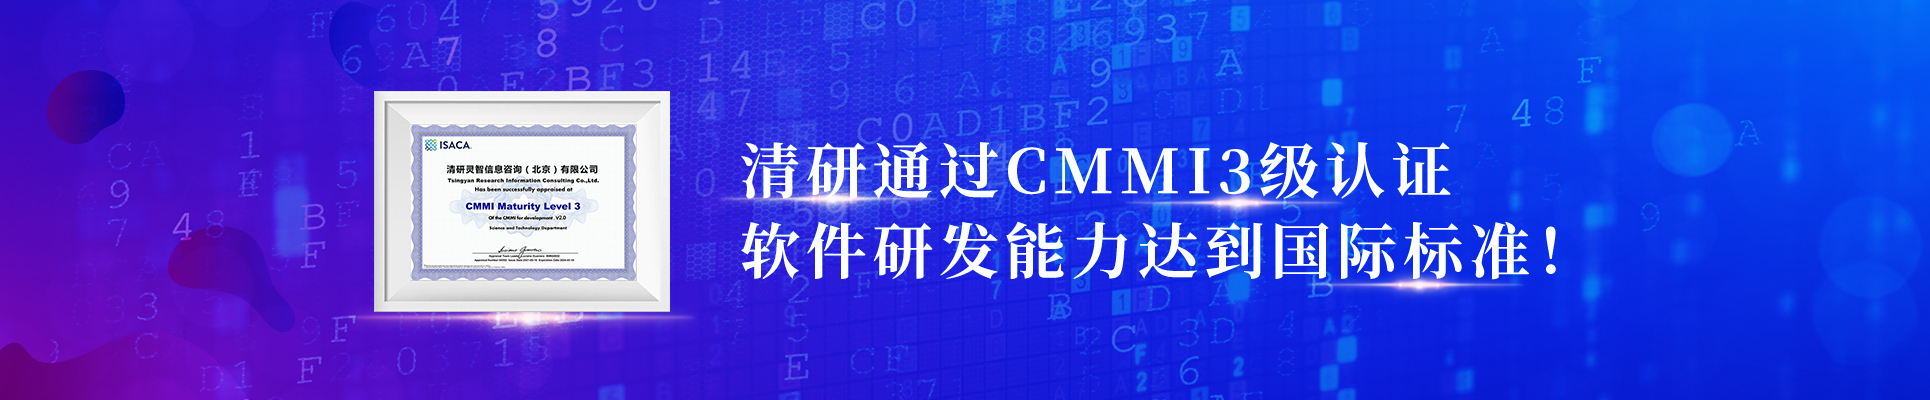 清研通过CMMI3级认证，软件研发能力达到国际标准